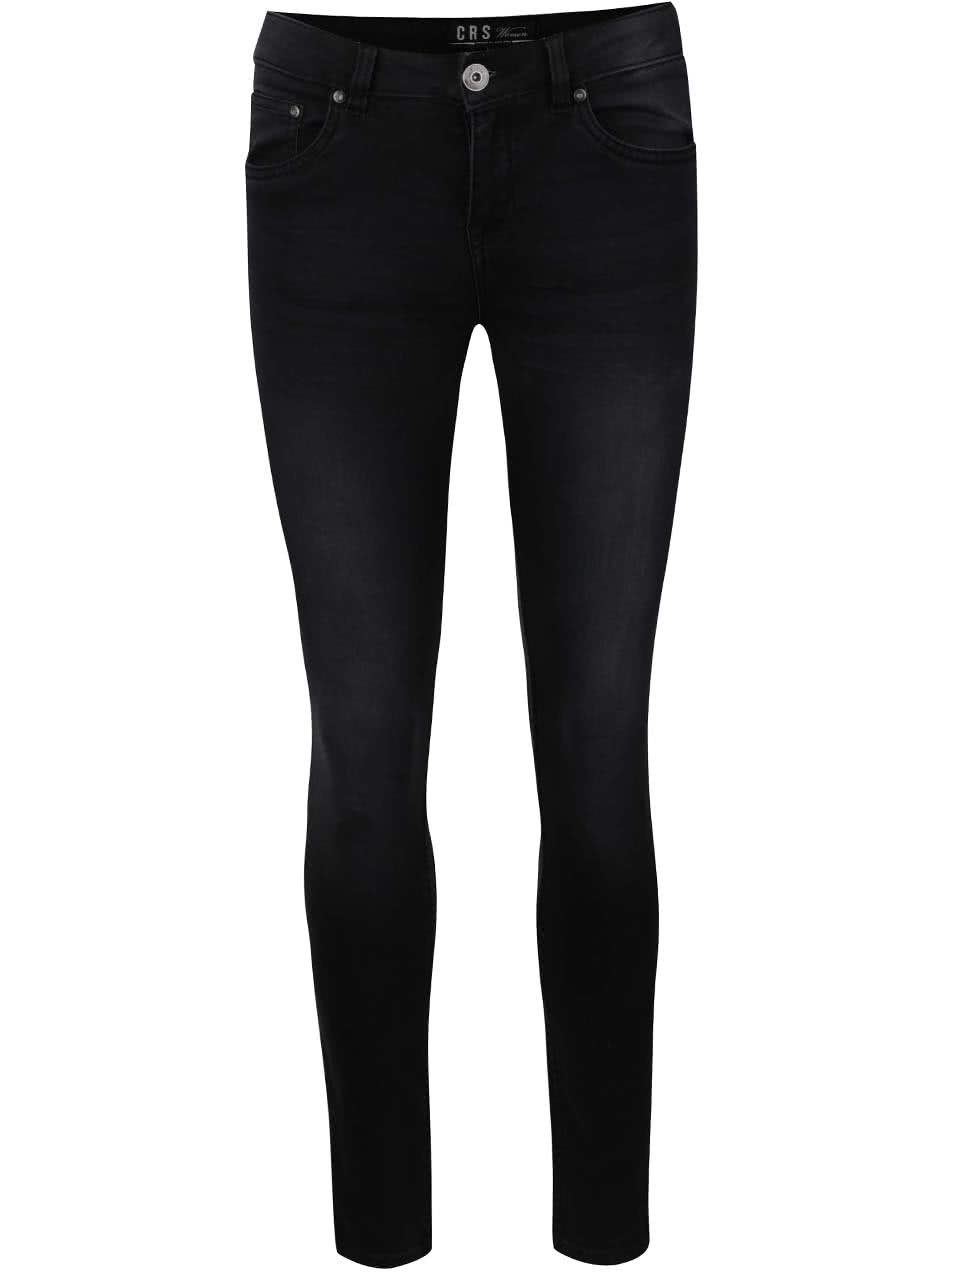 Tmavě šedé dámské skinny džíny s vyšisovaným efektem Cars Tyra